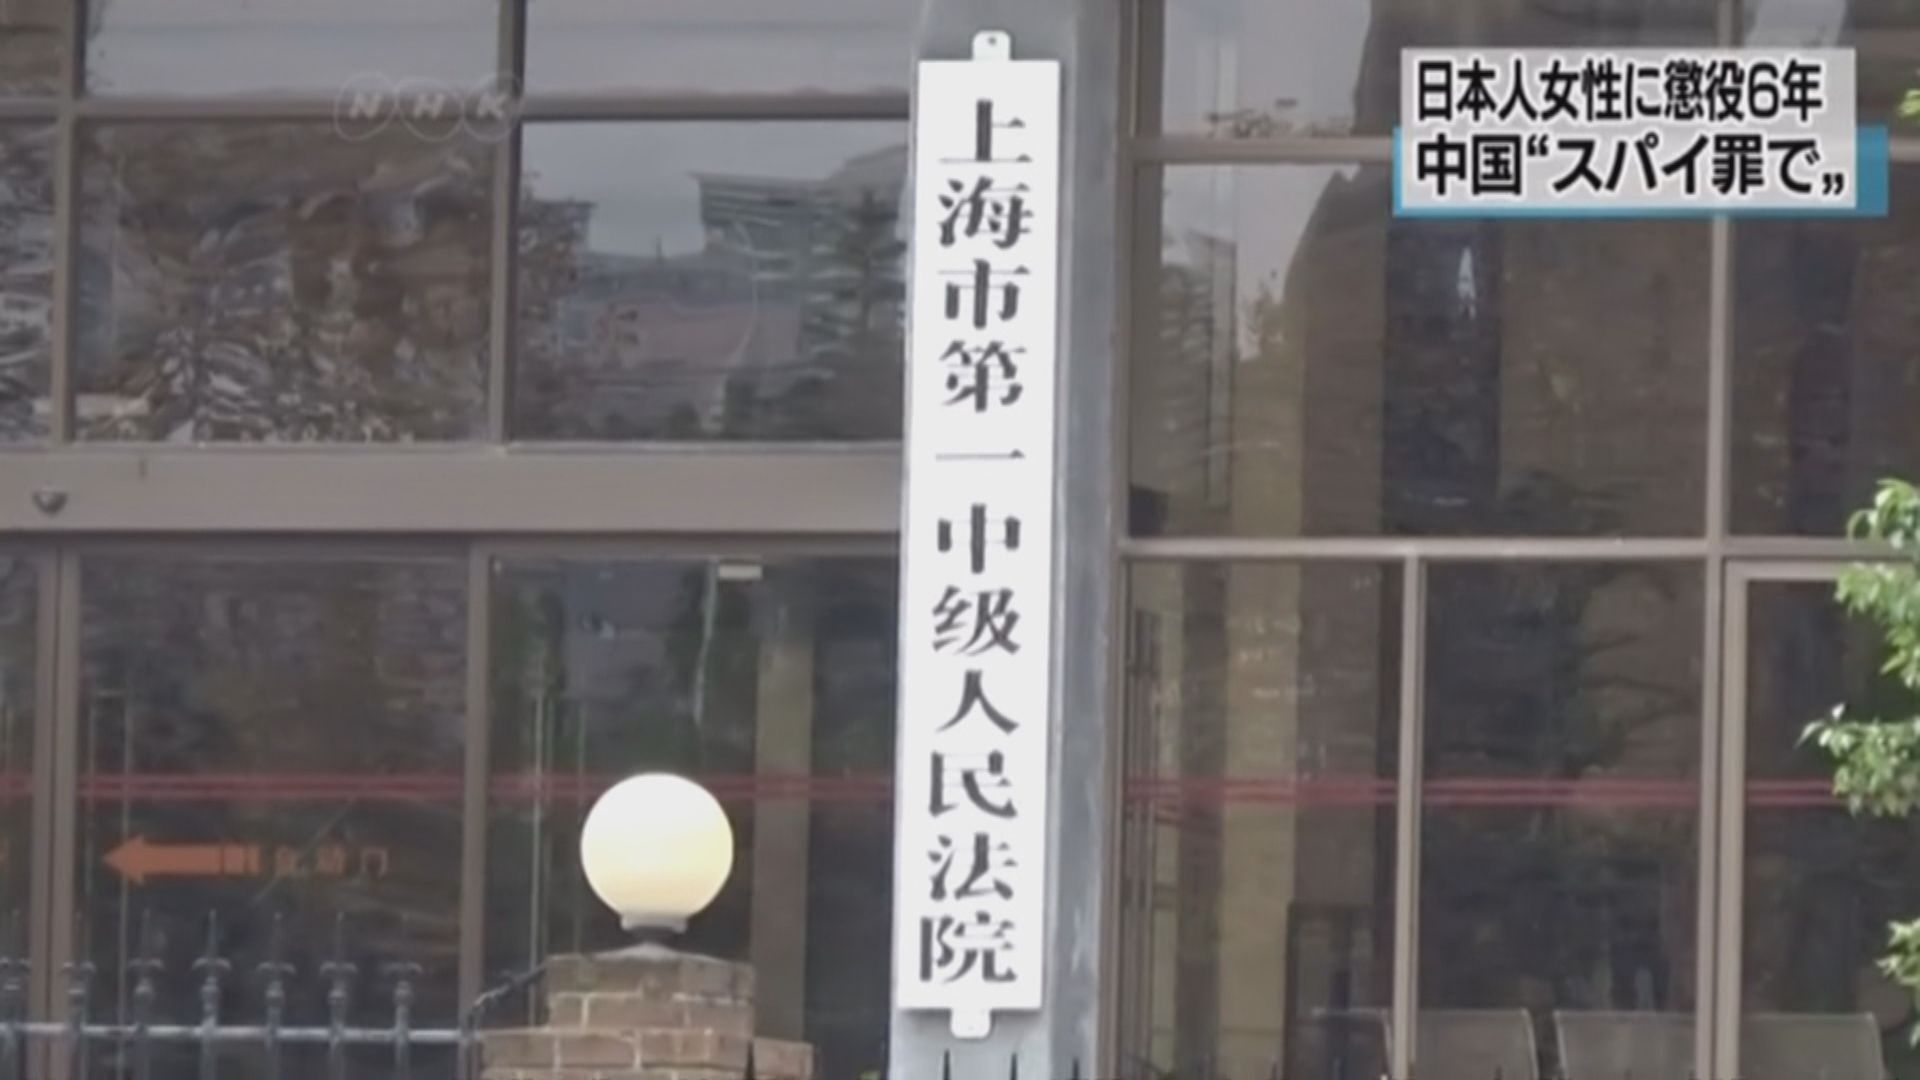 上海法院以間諜罪判一日本人六年監禁